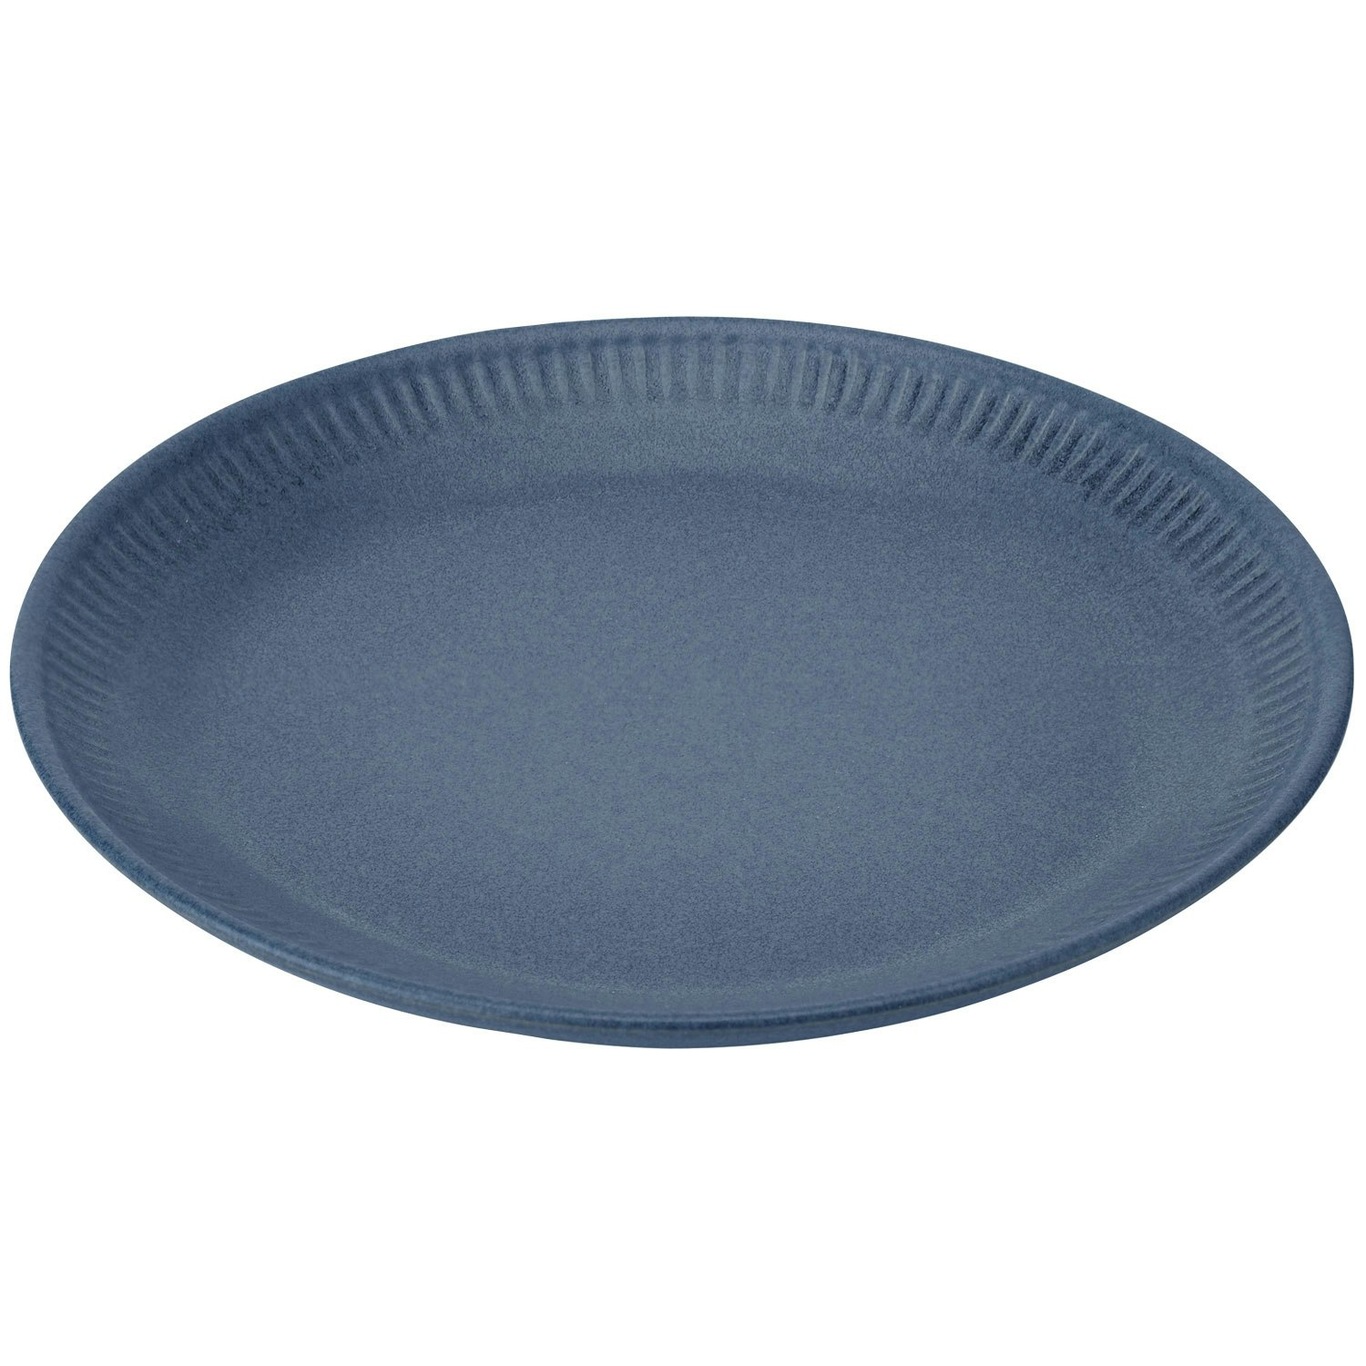 Knabstrup Plate 27 cm, Blue